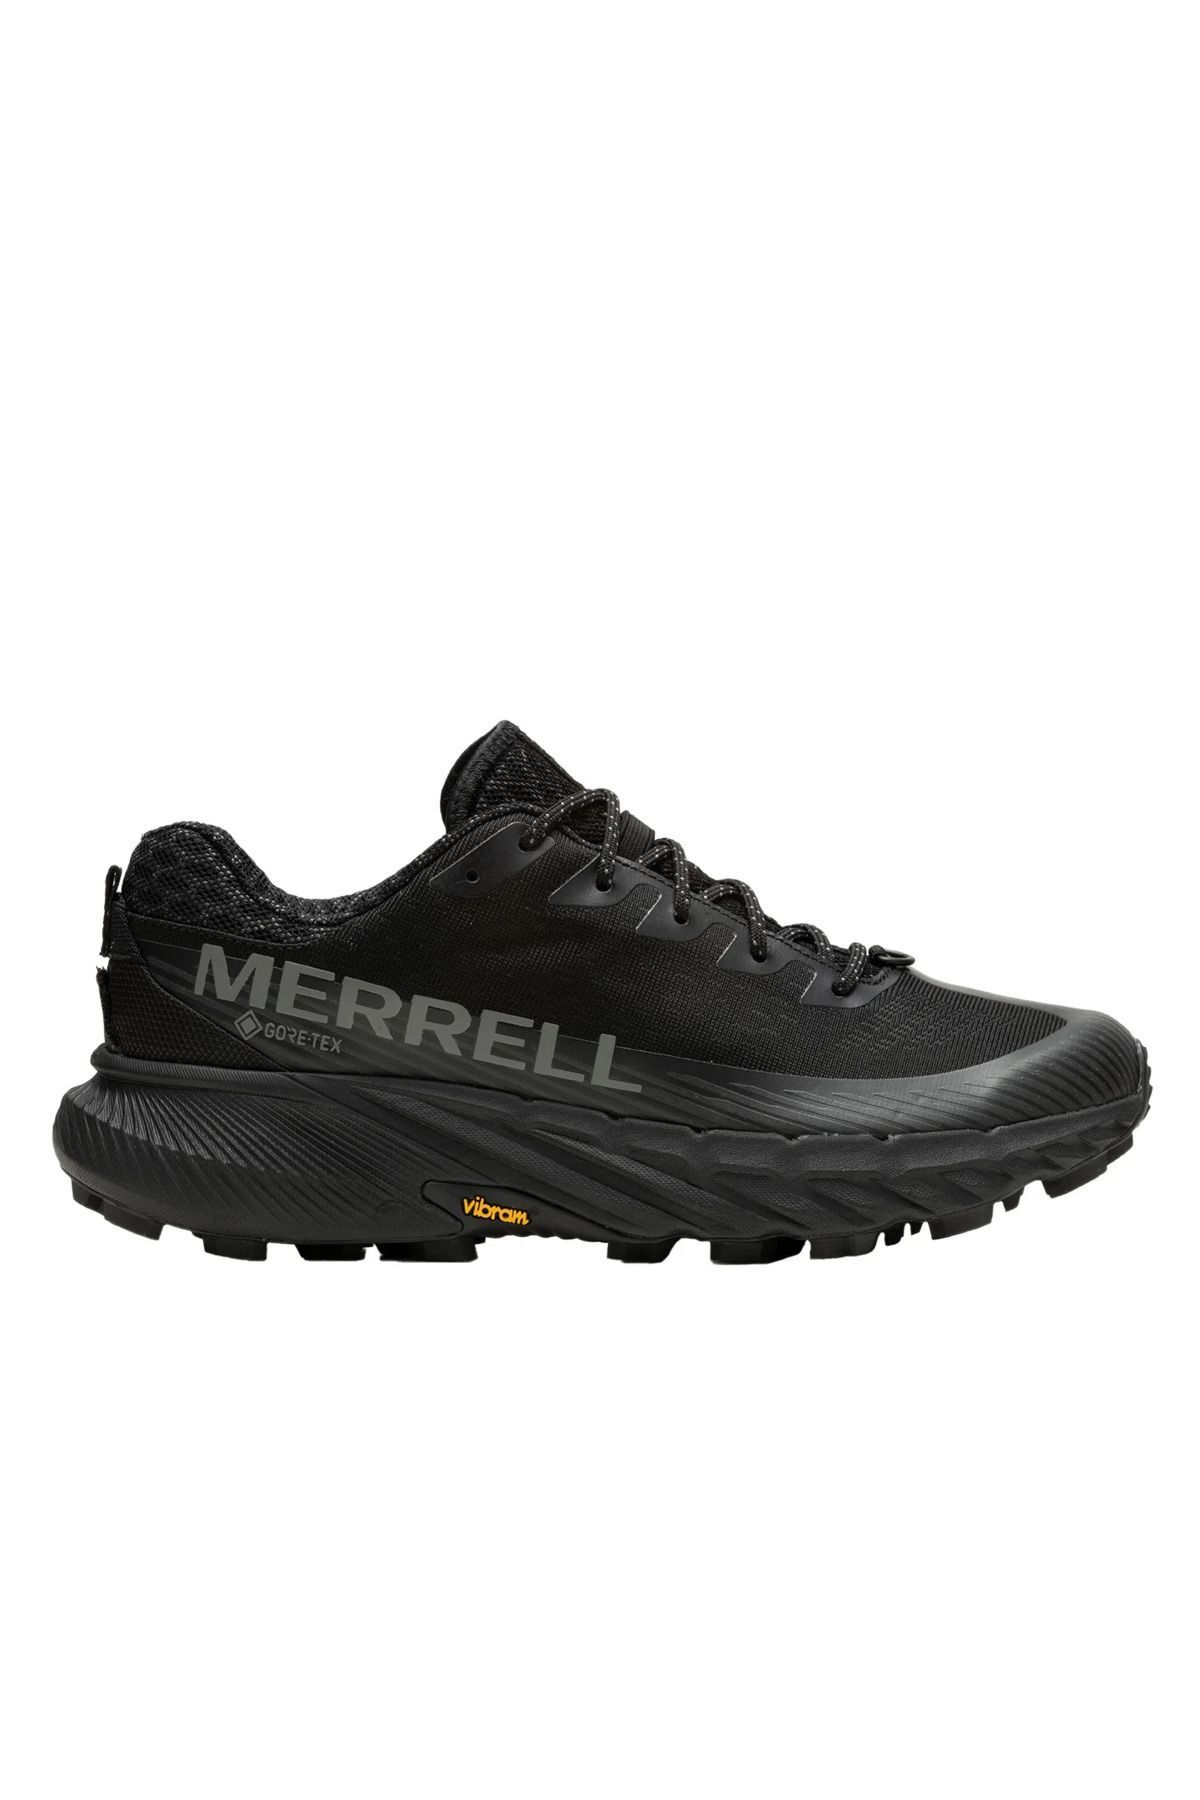 Merrell Agılıty Peak 5 Gtx J067745 Erkek Outdoor Ayakkabı - Siyah